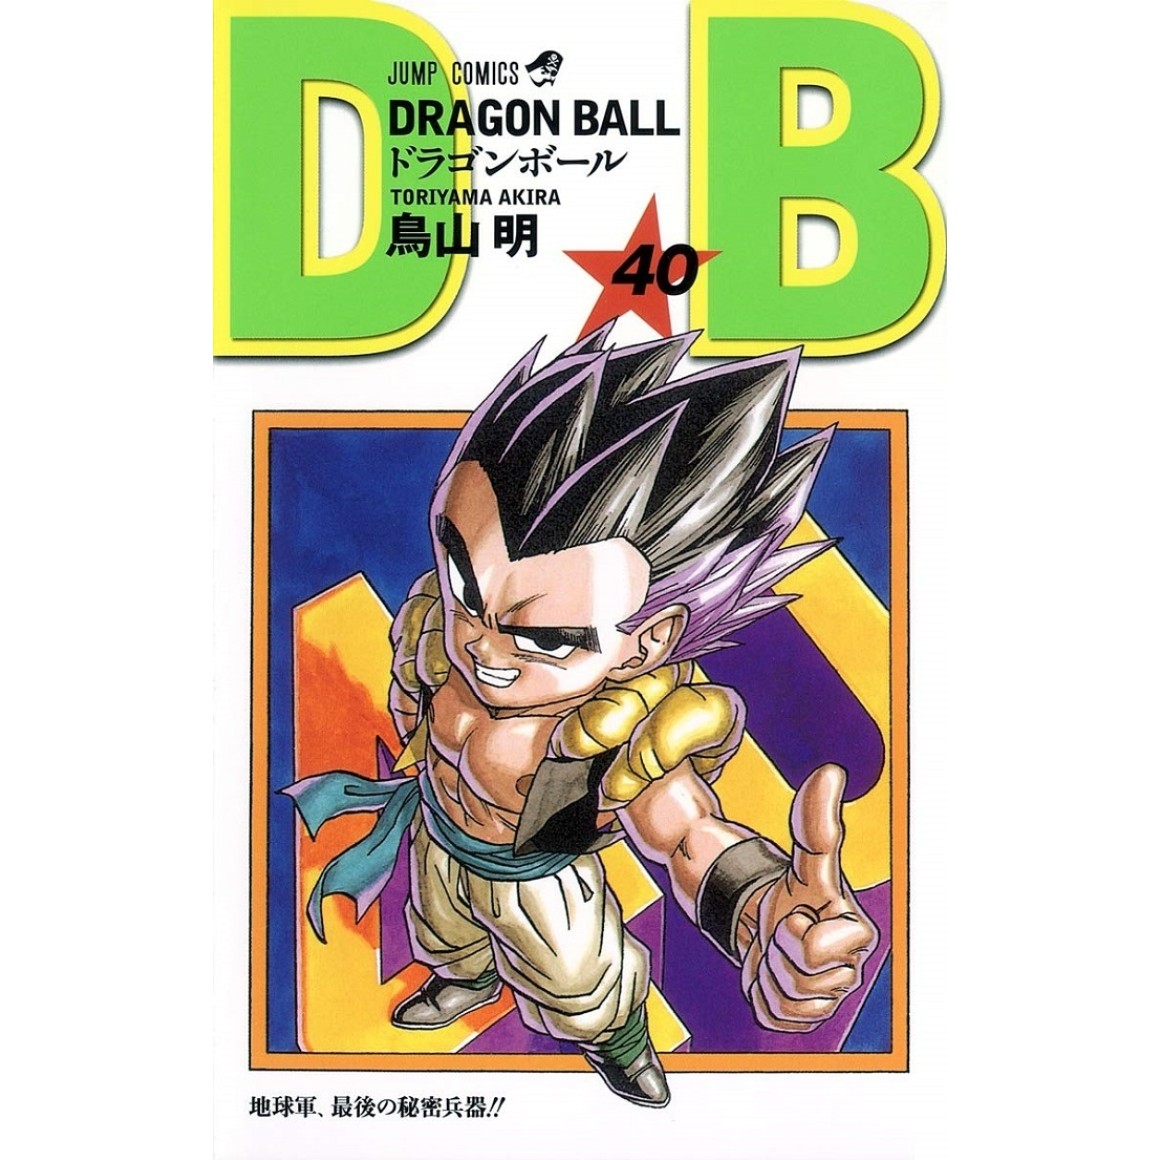 Esferas do Dragão Amigurumi - Dragon Ball